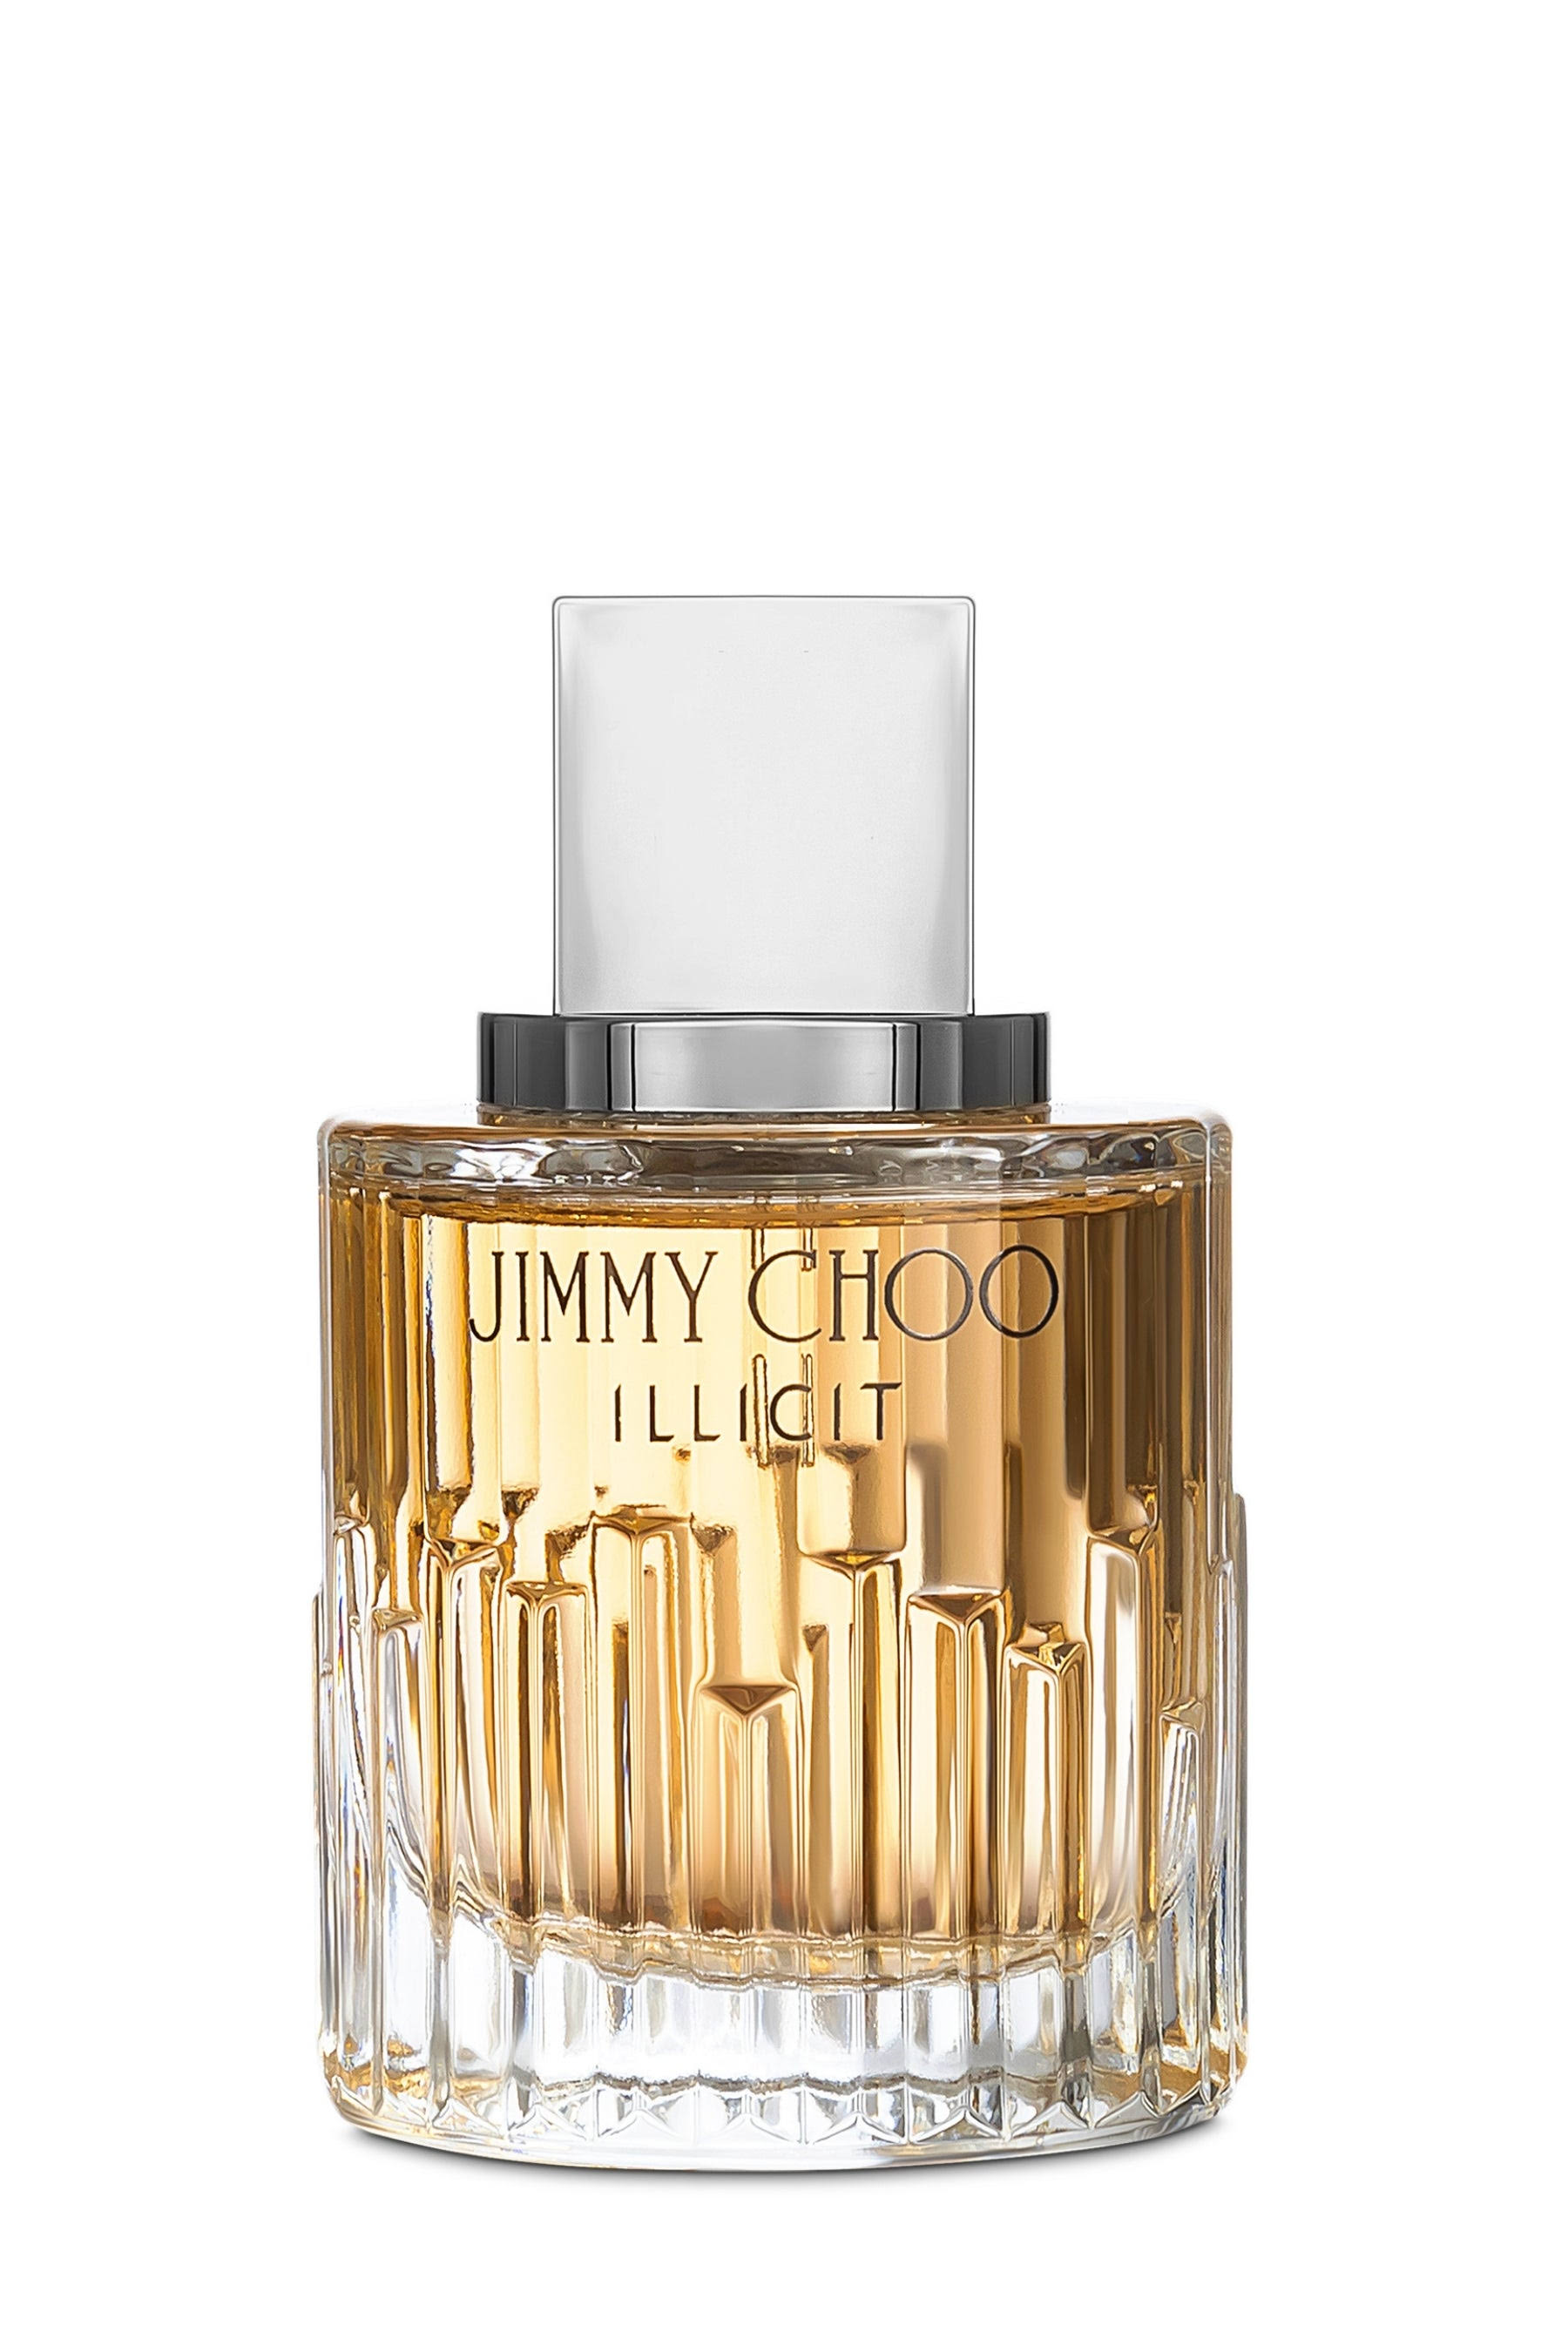 Jimmy Choo Illicit Eau De Parfum - 3.3oz